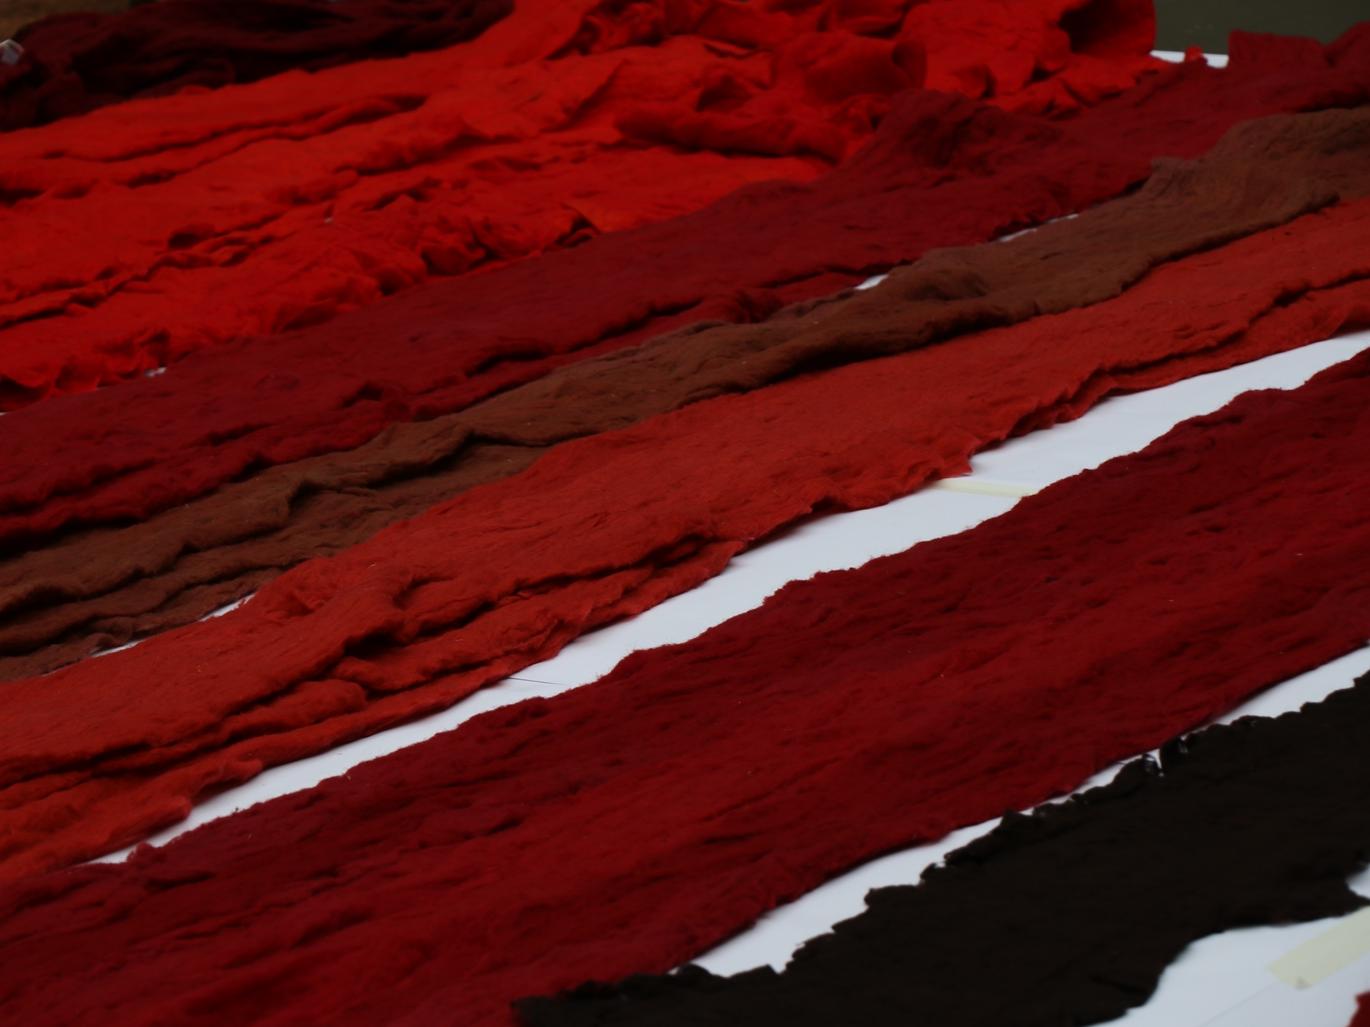 Fotografía de retazos de lana en tonos rojos